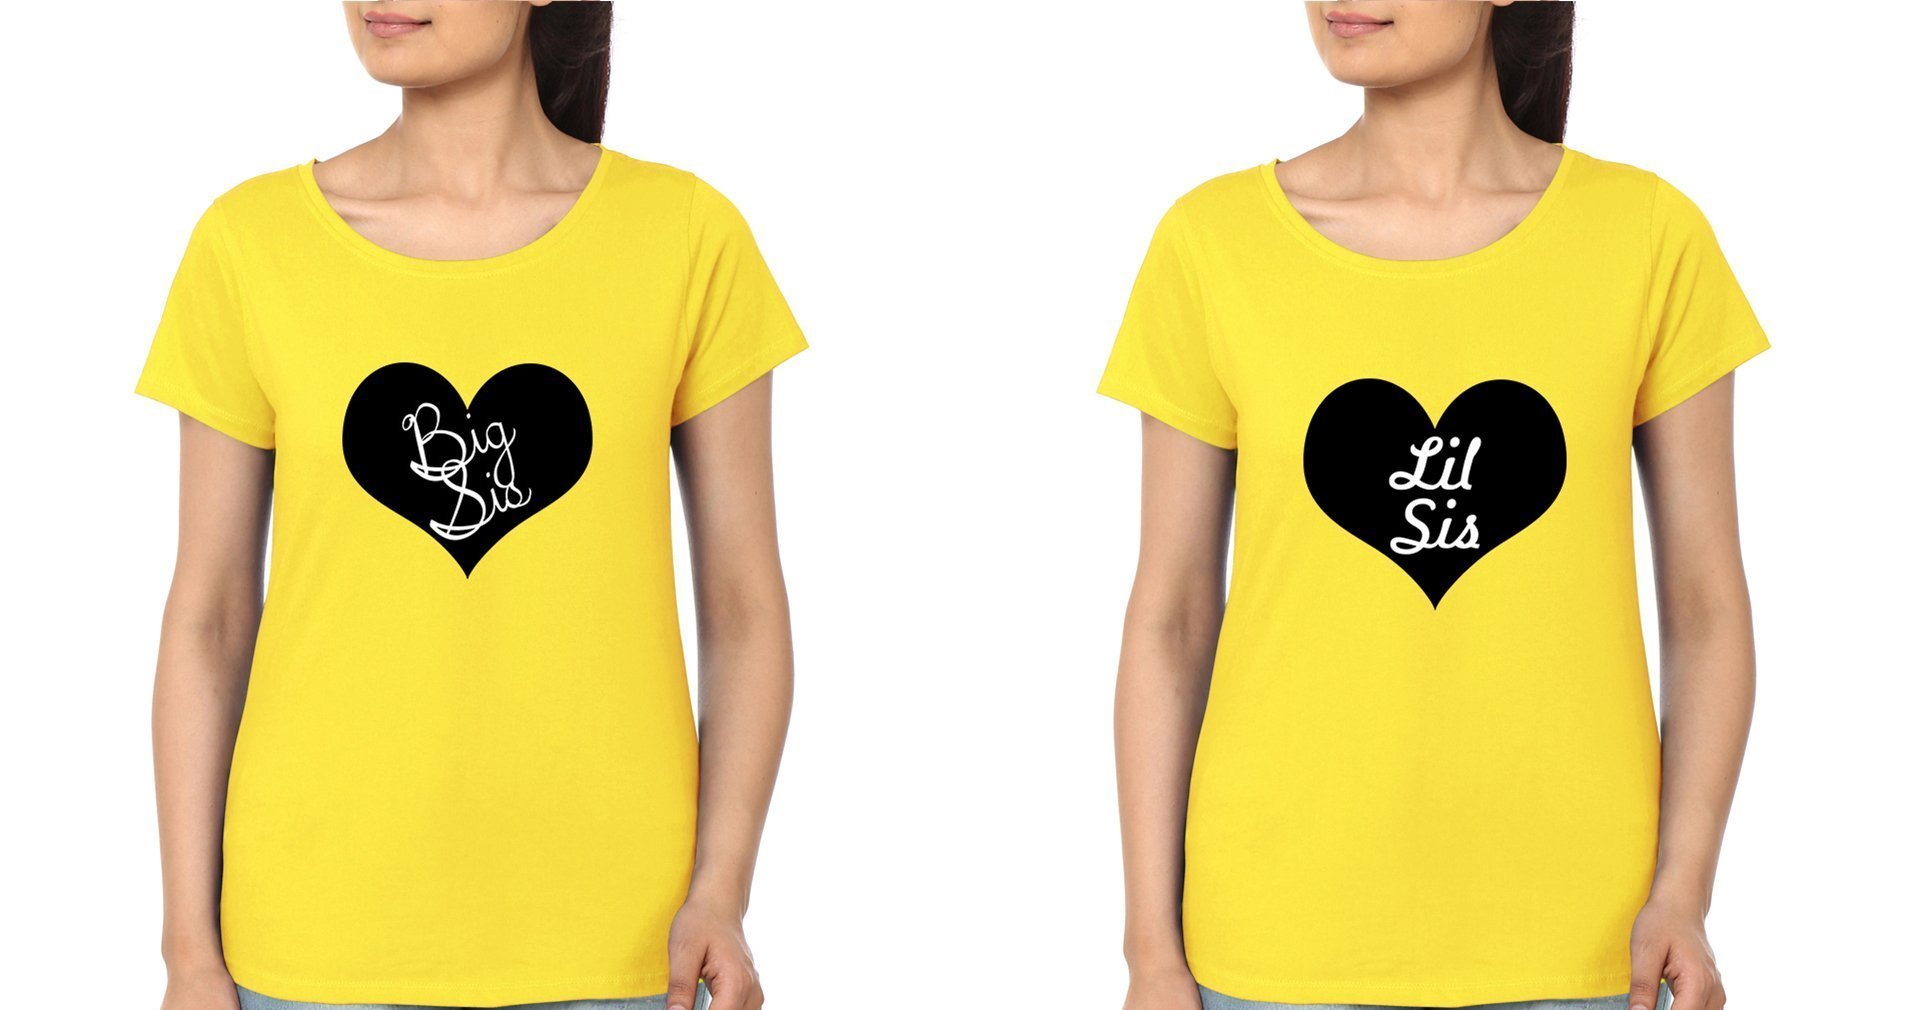 Big Sis & Lil Sis Sister Sister Half Sleeves T-Shirts -FunkyTees - Funky Tees Club